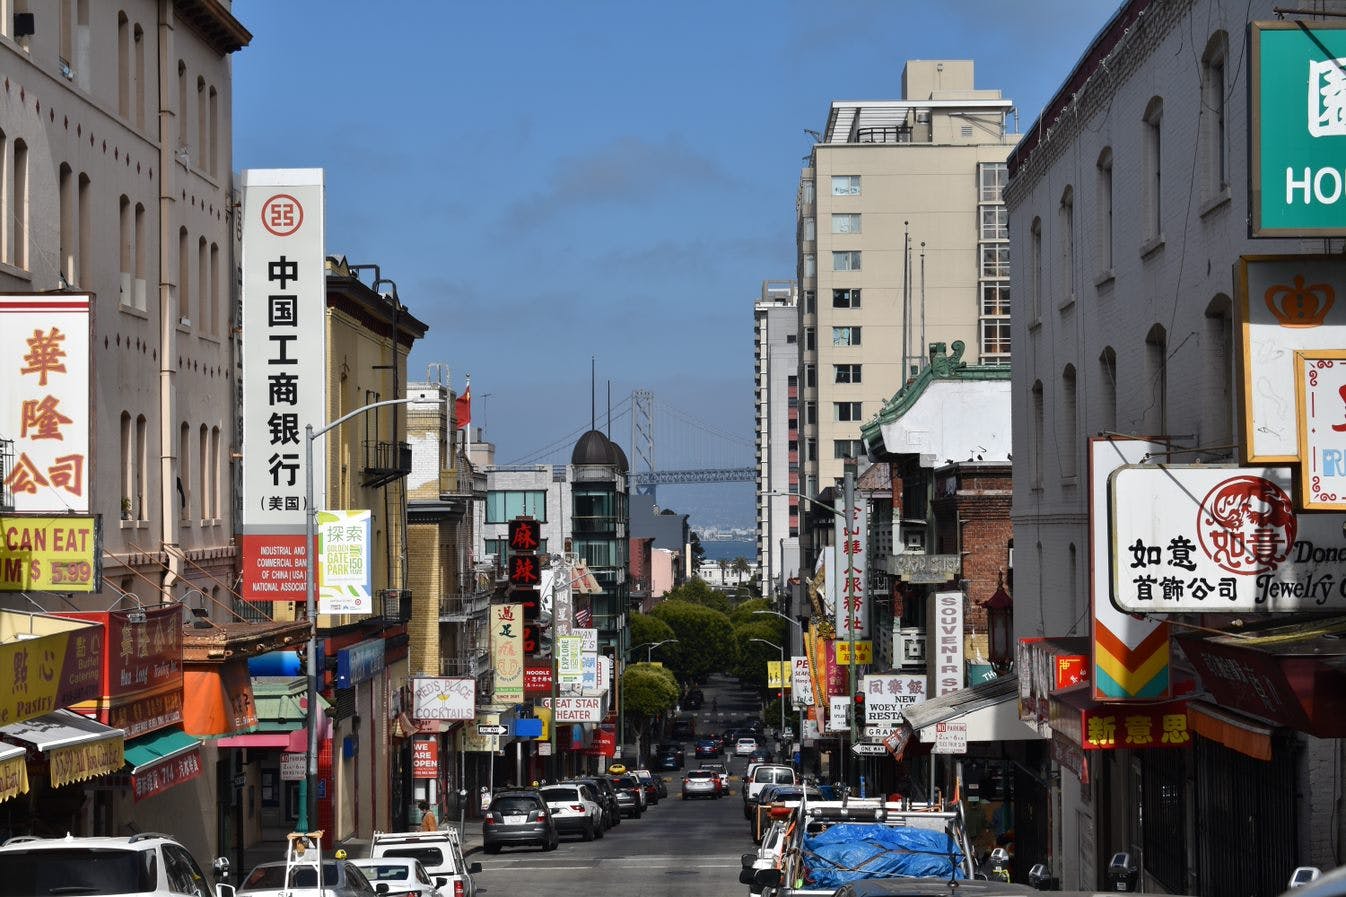 Visite à pied de la gastronomie et de l'histoire du quartier chinois de San Francisco